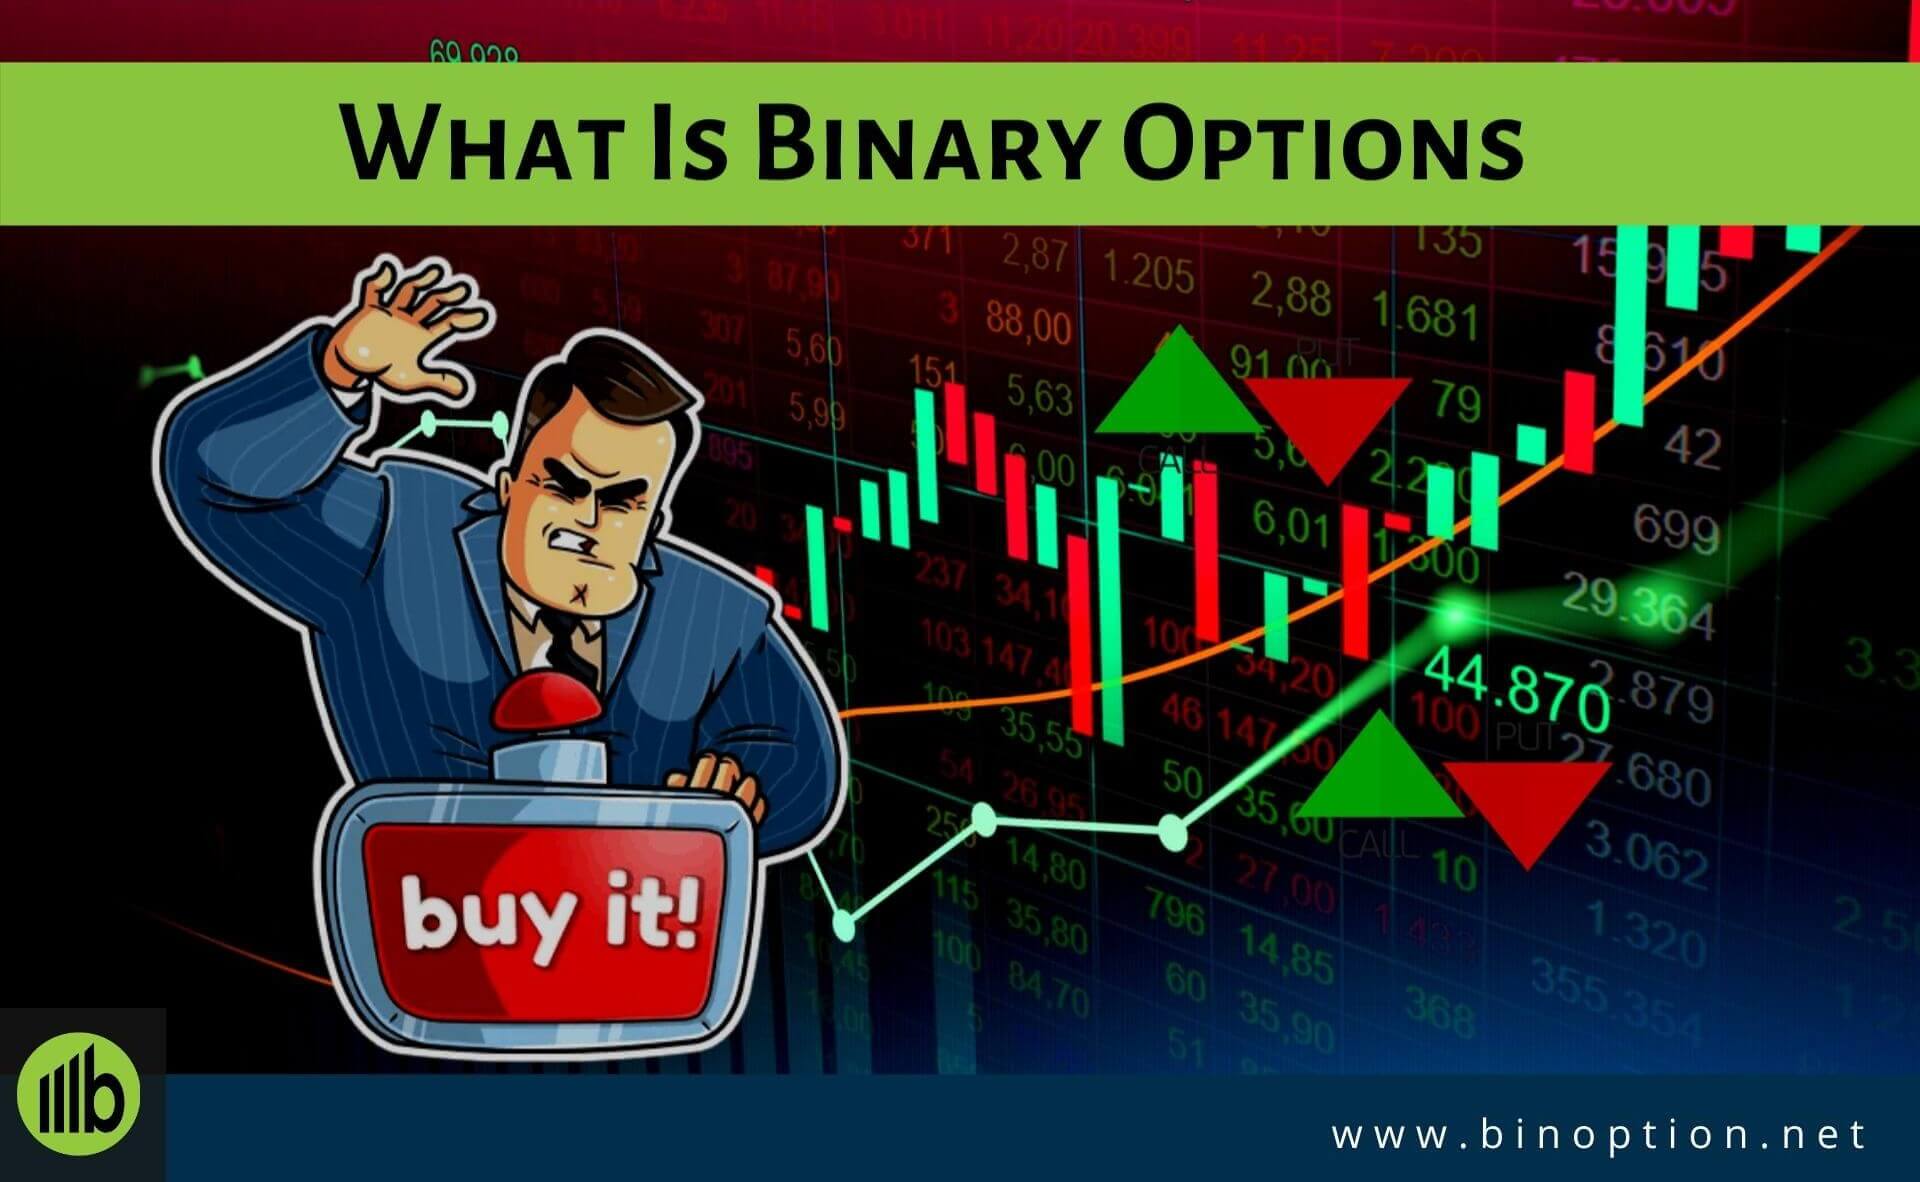 2020 binary options